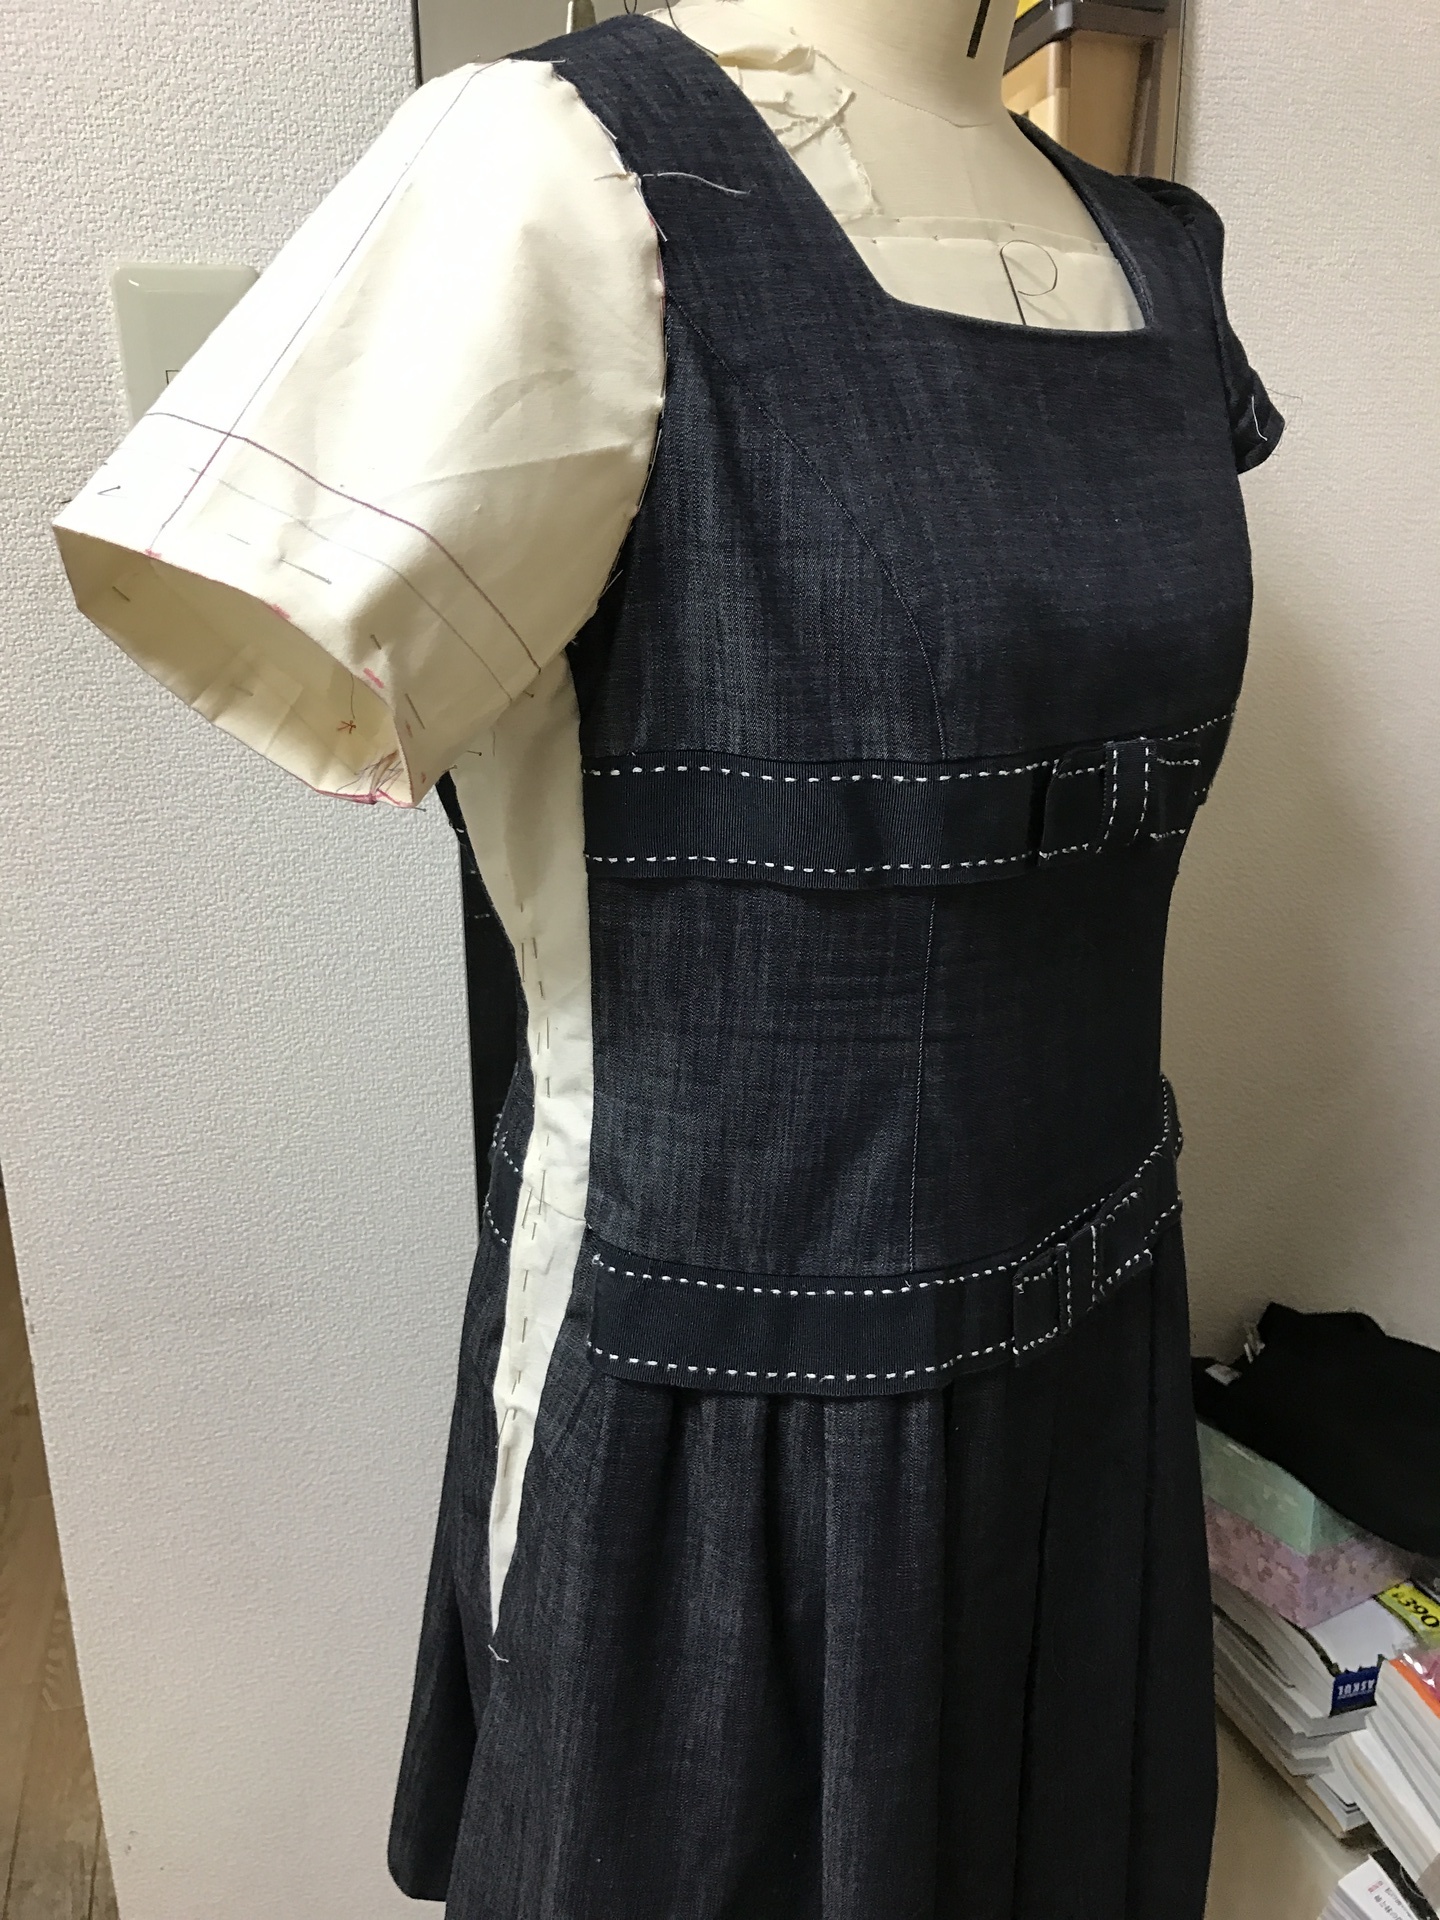 ワンピースをリメイクで昔の洋服が復活 サイズアップと袖の大きさを変えたら 福岡の服 着物 リメイク オーダーメイド ウェディングドレス